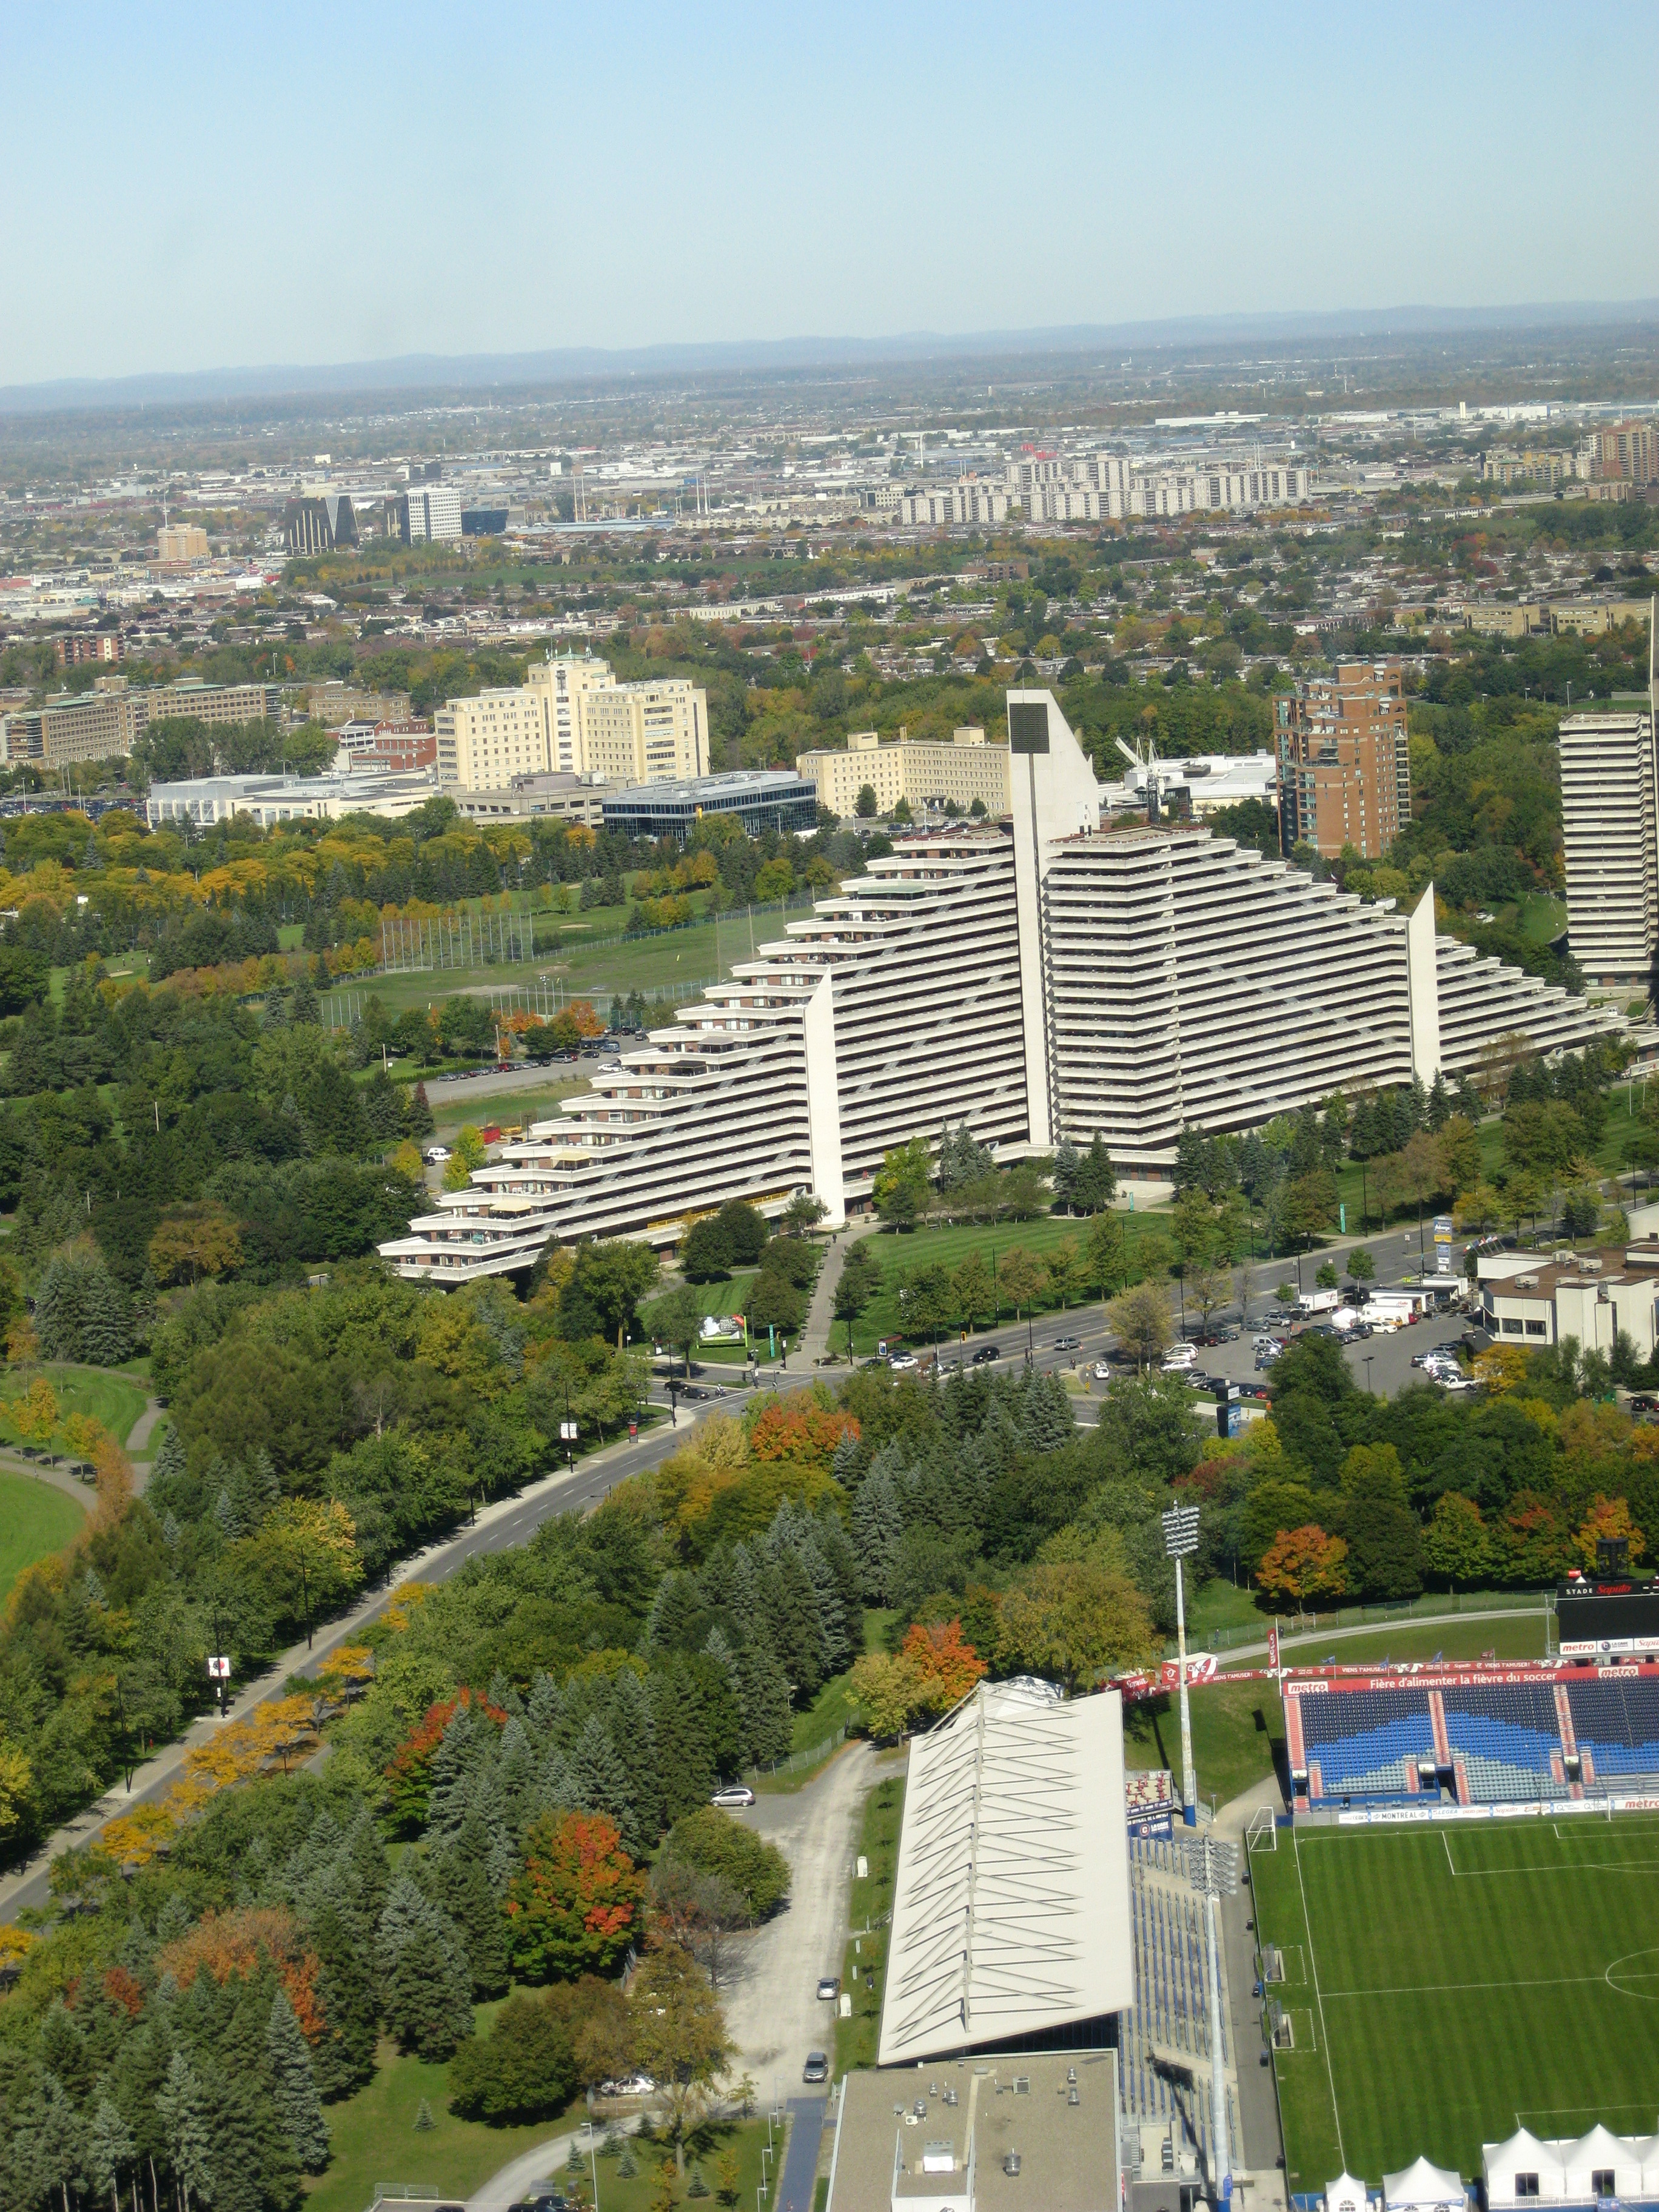 La villa olímpica vista desde lo alto de la torre del estadio